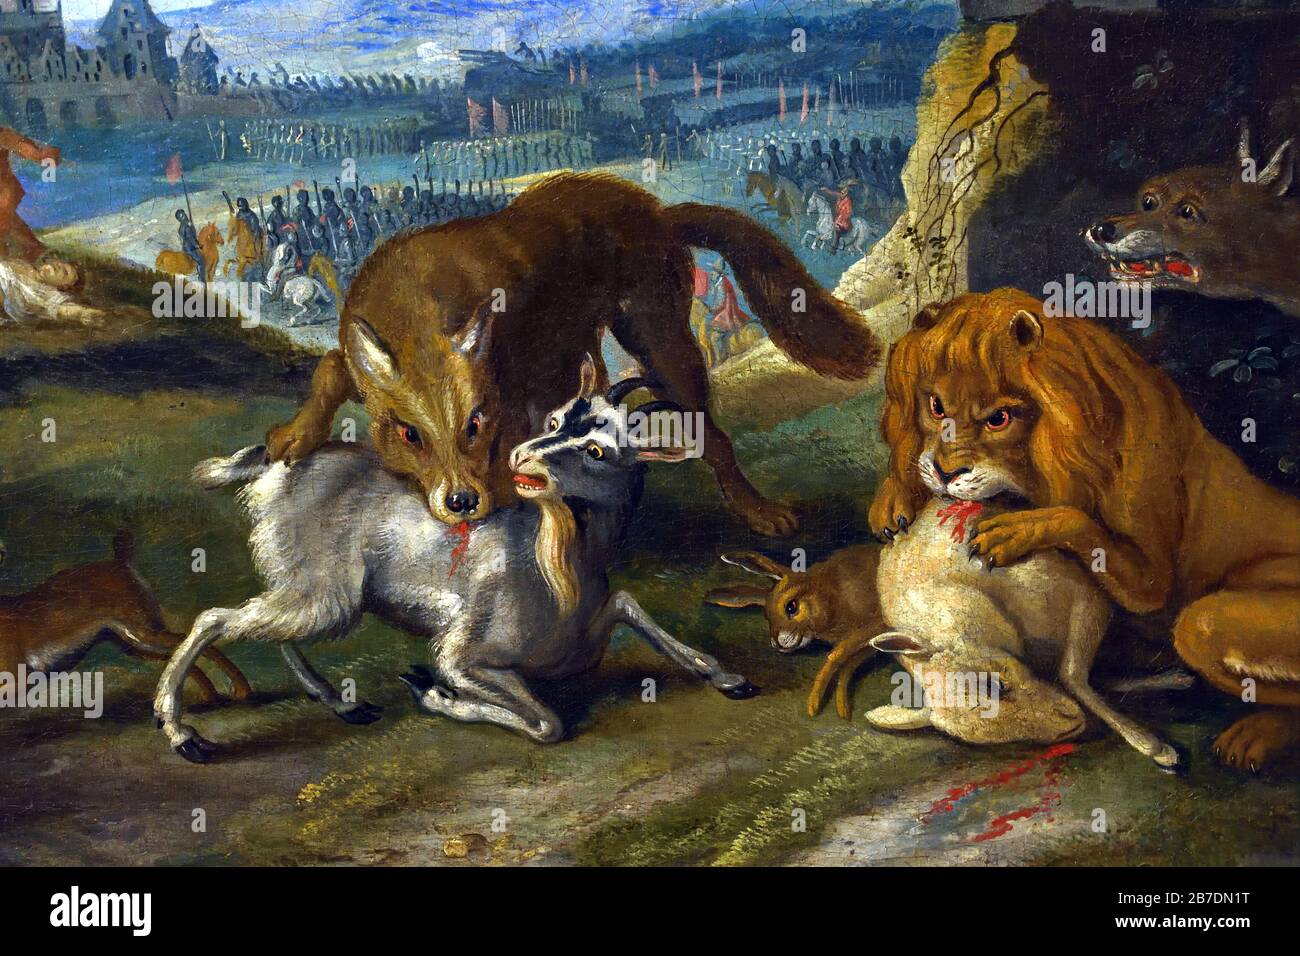 Allégorie de la guerre par Jan Brueghel le Jeune 1601-1678 la famille Brueghel ( Bruegel ou Breughel ), peintres flamands du XVIe au XVIIe siècle, belge, Belgique. Banque D'Images